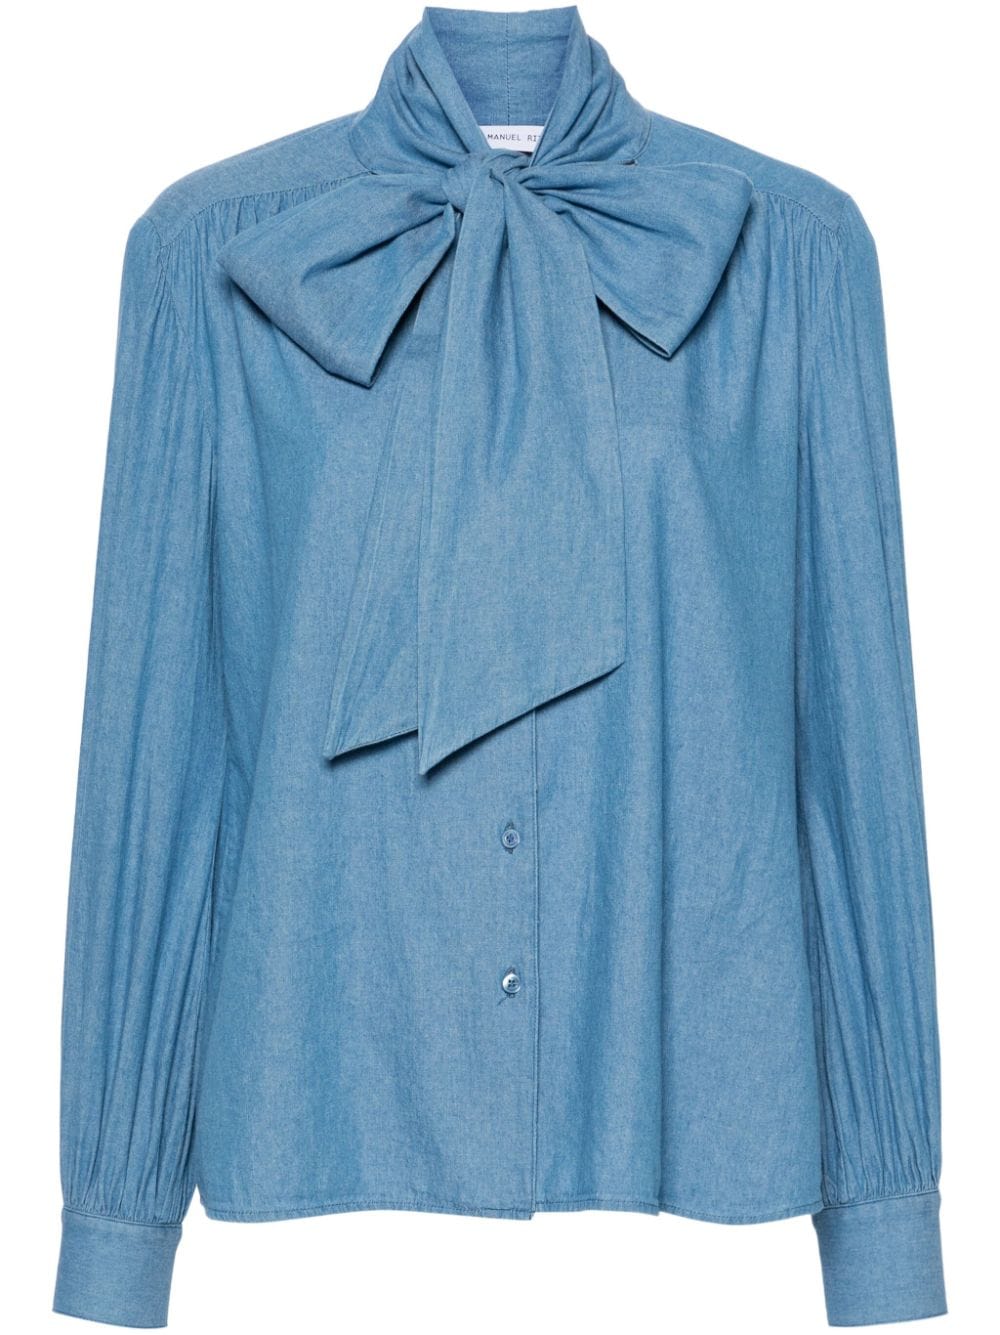 Manuel Ritz scarf-collar button-up shirt - Blue